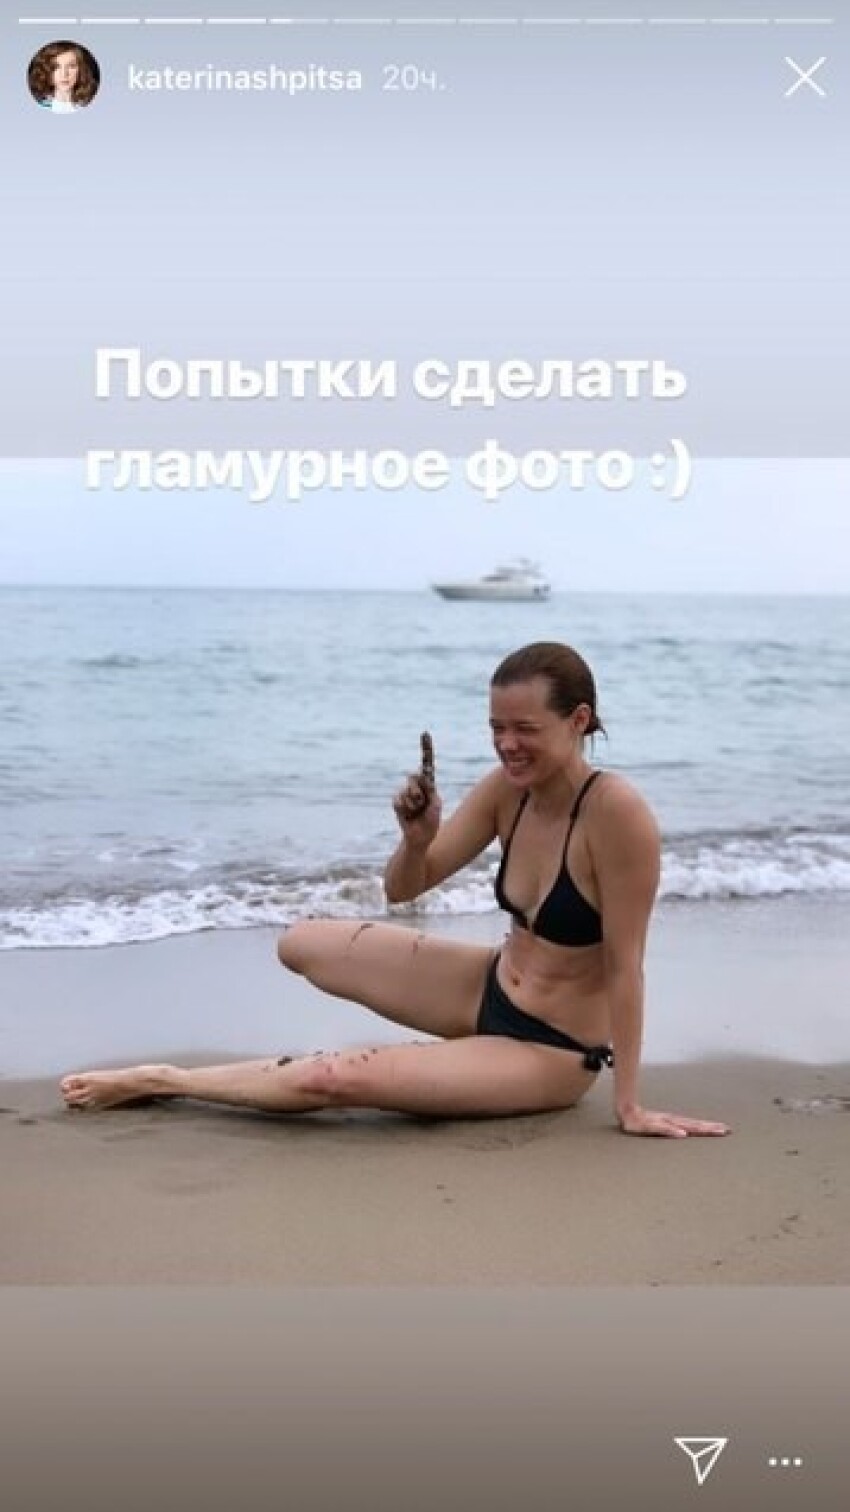 Катерина Шпица в бикини устроила фотосессию на турецком пляже